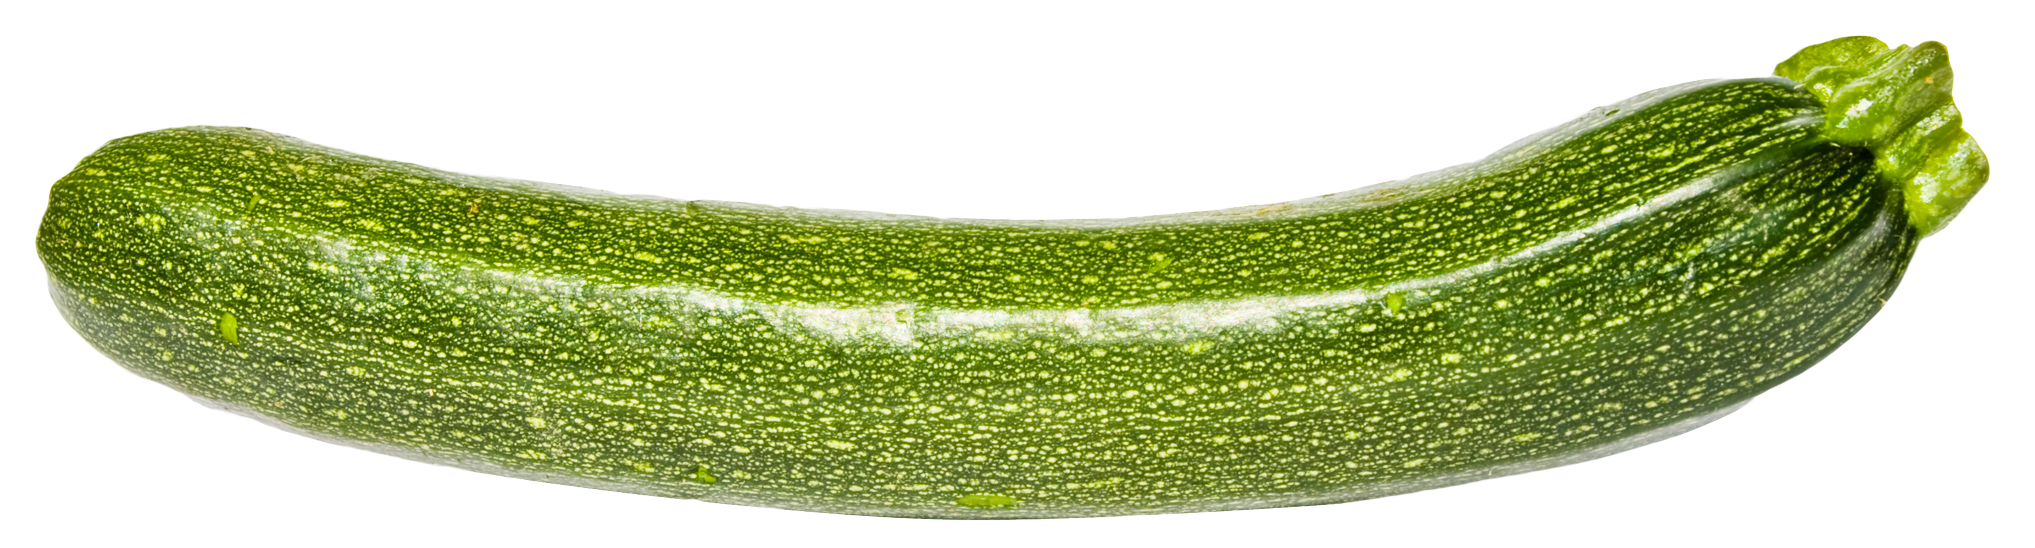 A Close Up Of A Zucchini